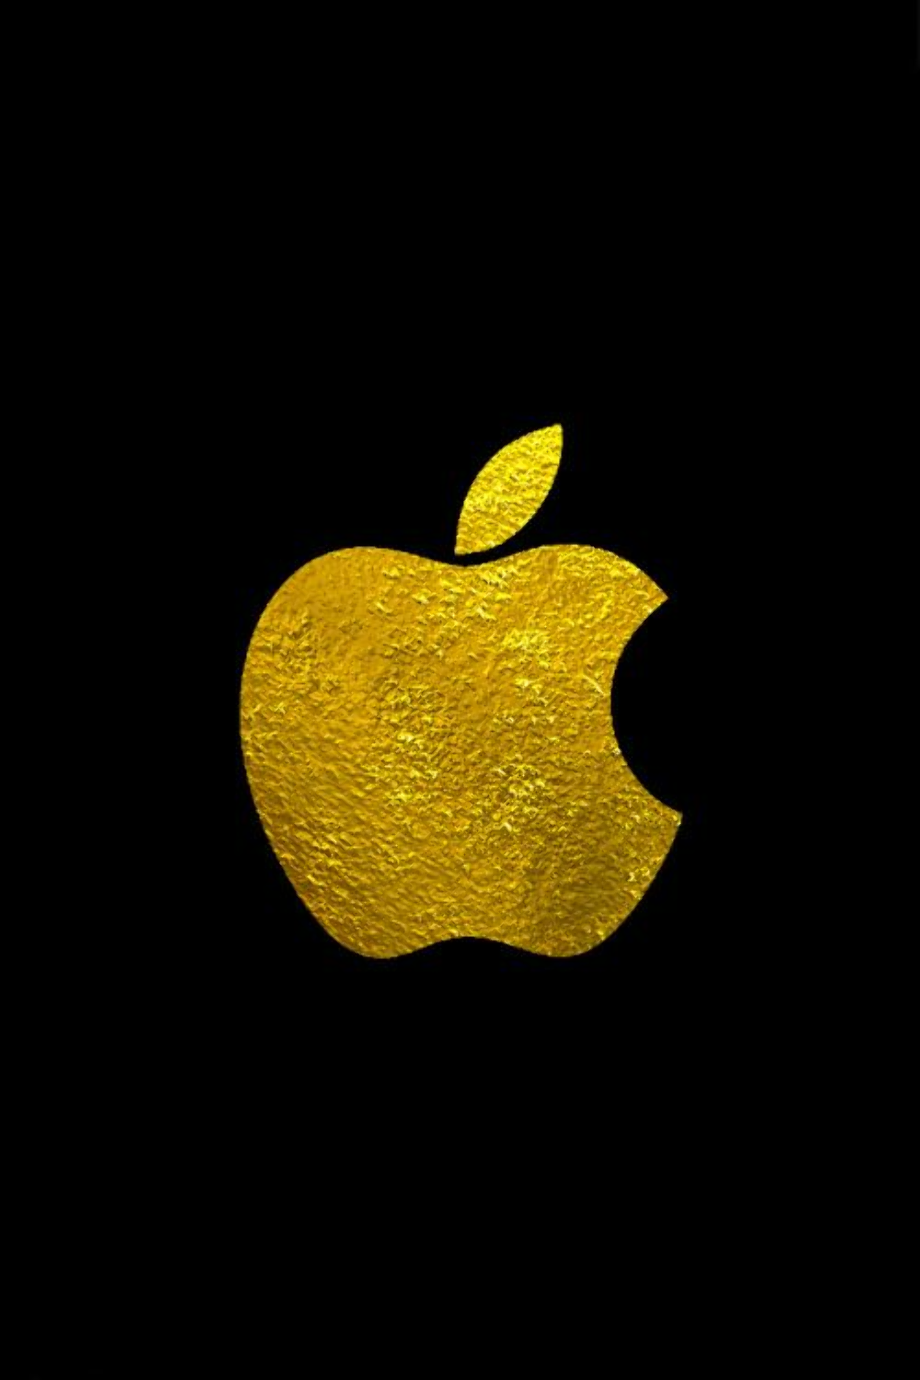 Apple iphone золотой. Голд эпл эпл Голд. Золотой айфон эпл. Айфон яблоко золото. Золотое яблоко айфон на черном фоне.